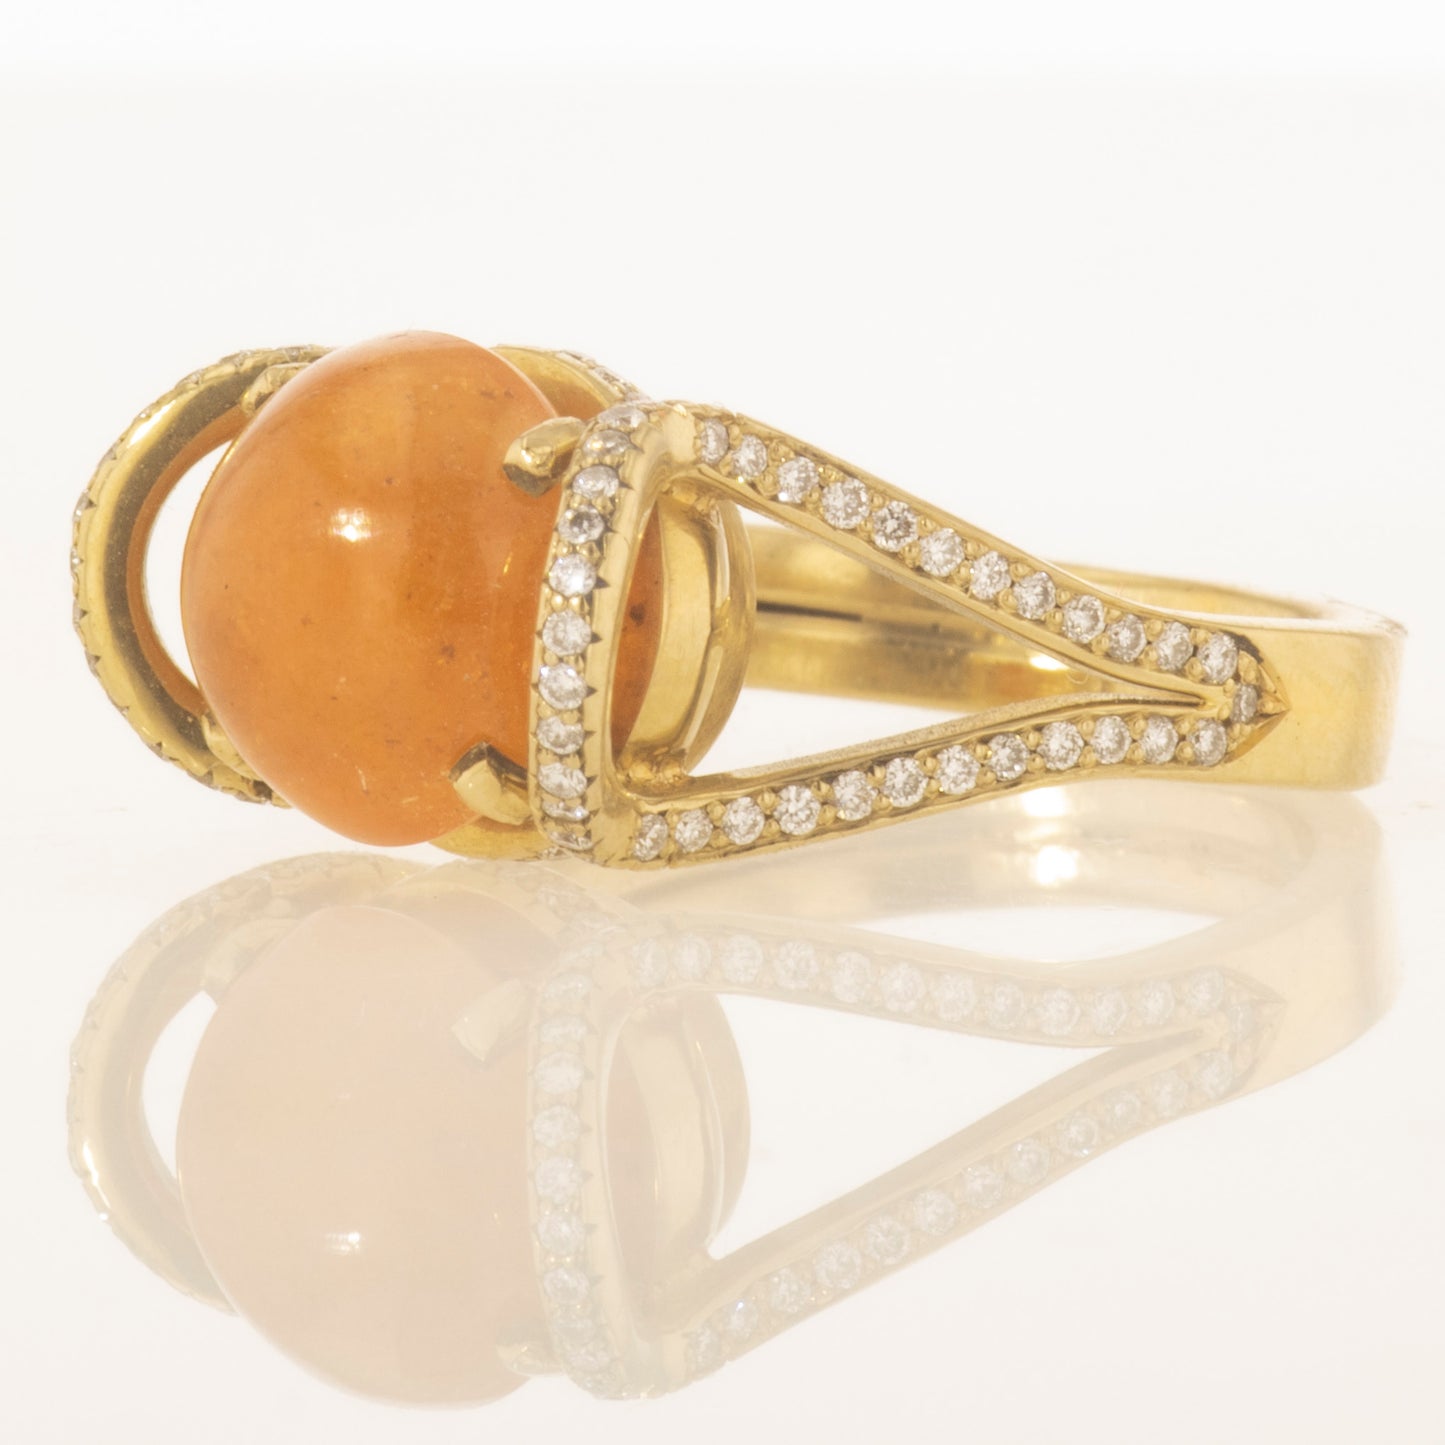 Mandarin garnet ring